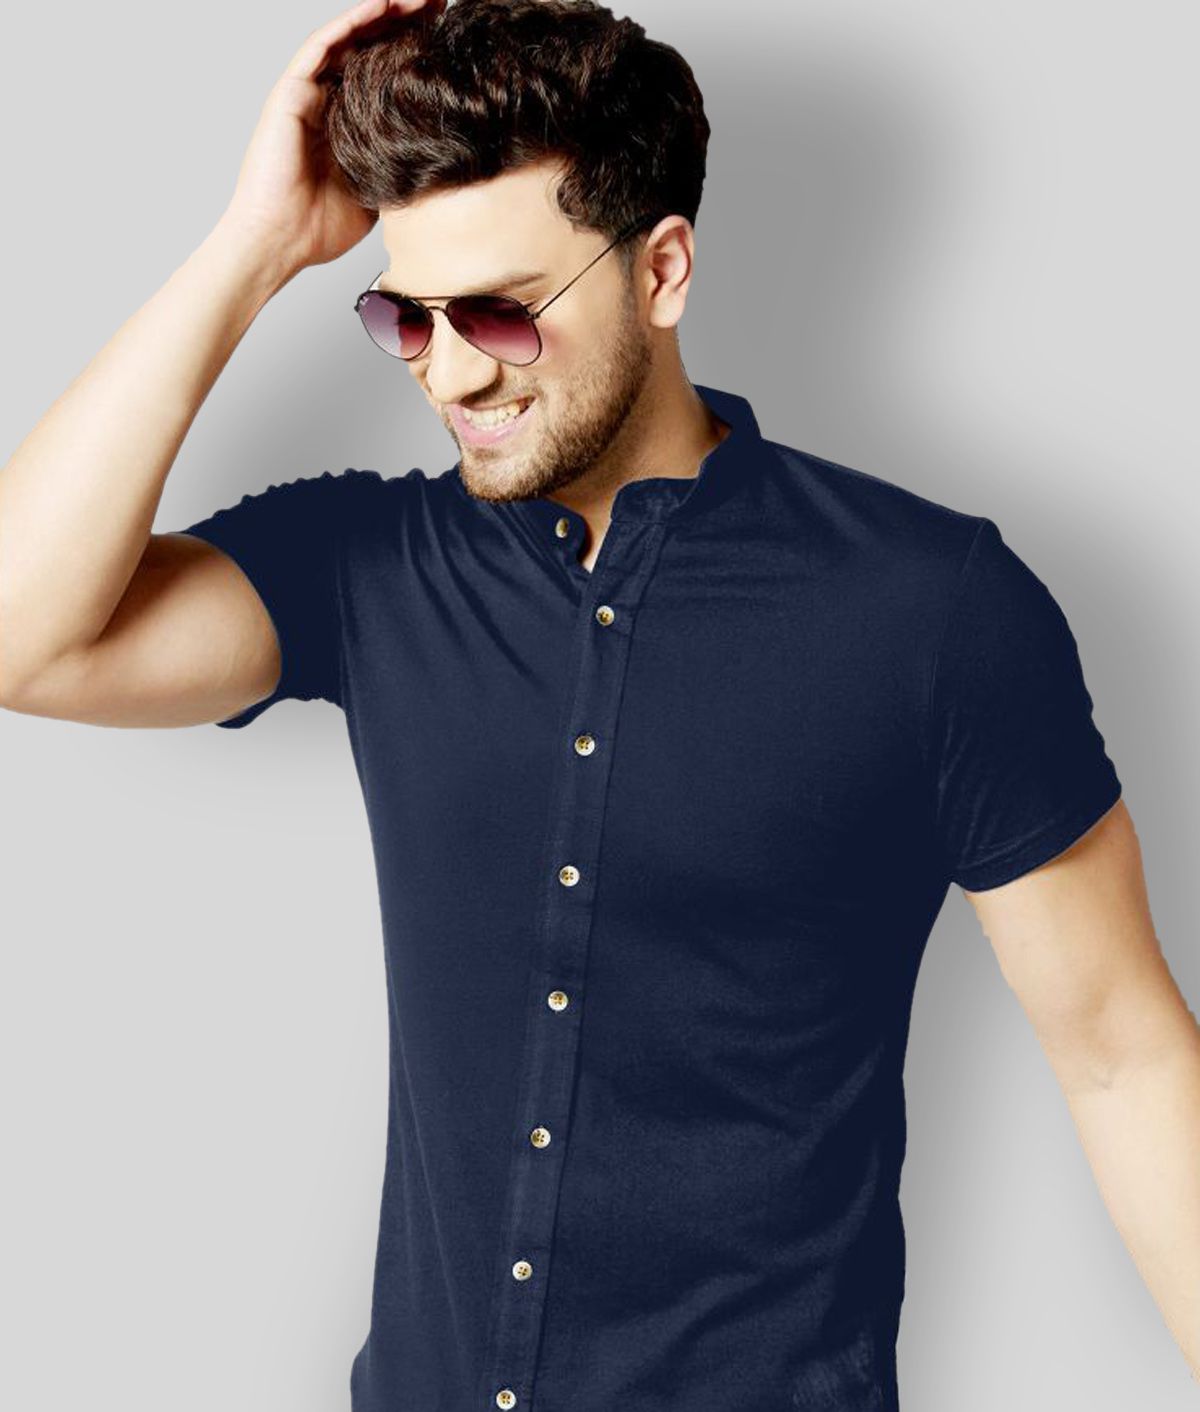     			GESPO -  Navy Blue Cotton Blend Regular Fit Men's Casual Shirt (Pack of 1)